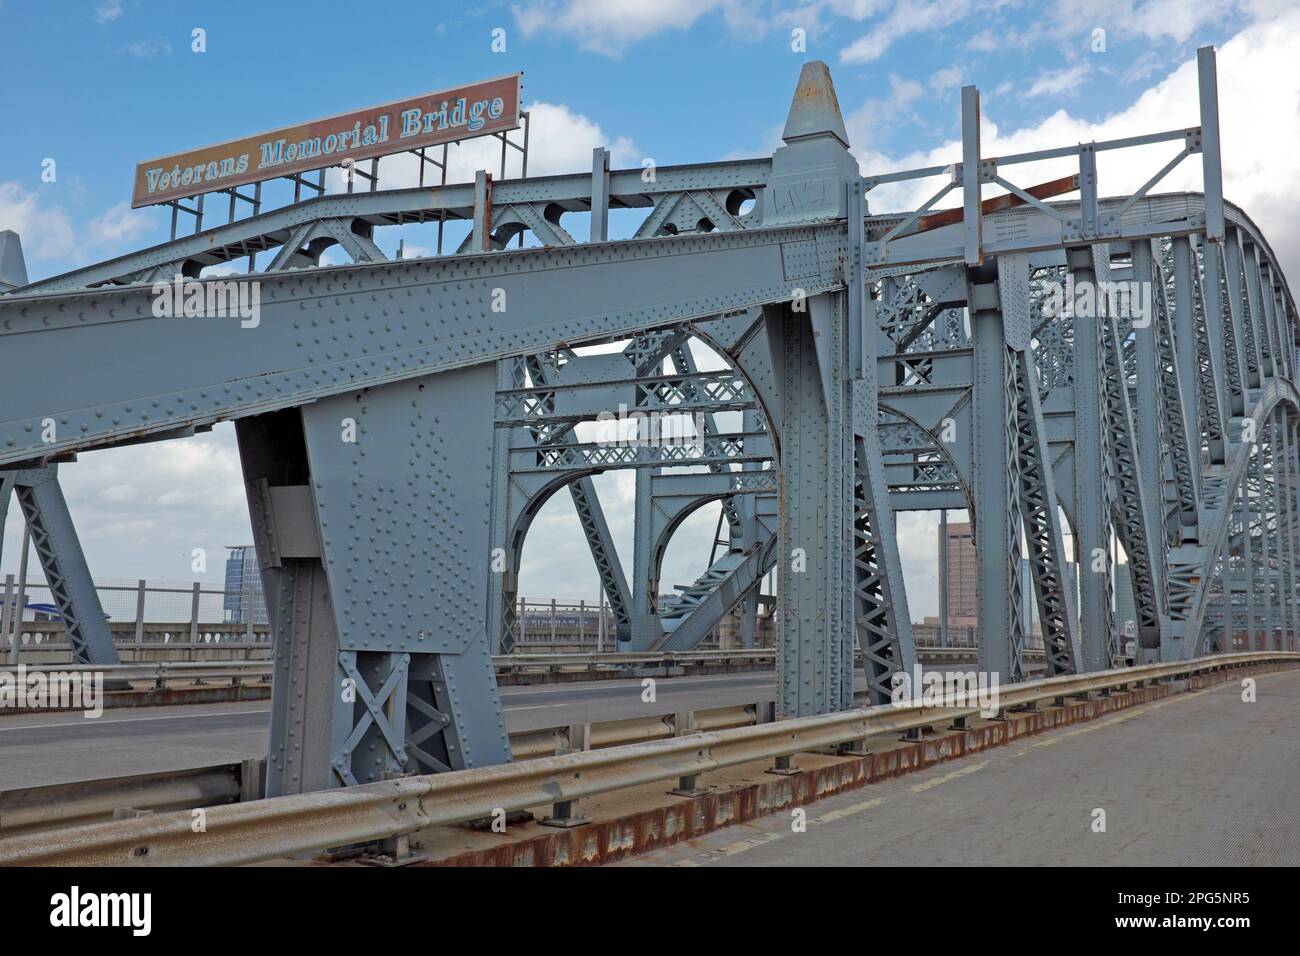 Die Veterans Memorial Bridge in Cleveland, Ohio, USA, ist eine Hochleistungsbrücke mit Kompressionsbogen, die auch als Detroit-Superior Bridge bekannt ist. Stockfoto